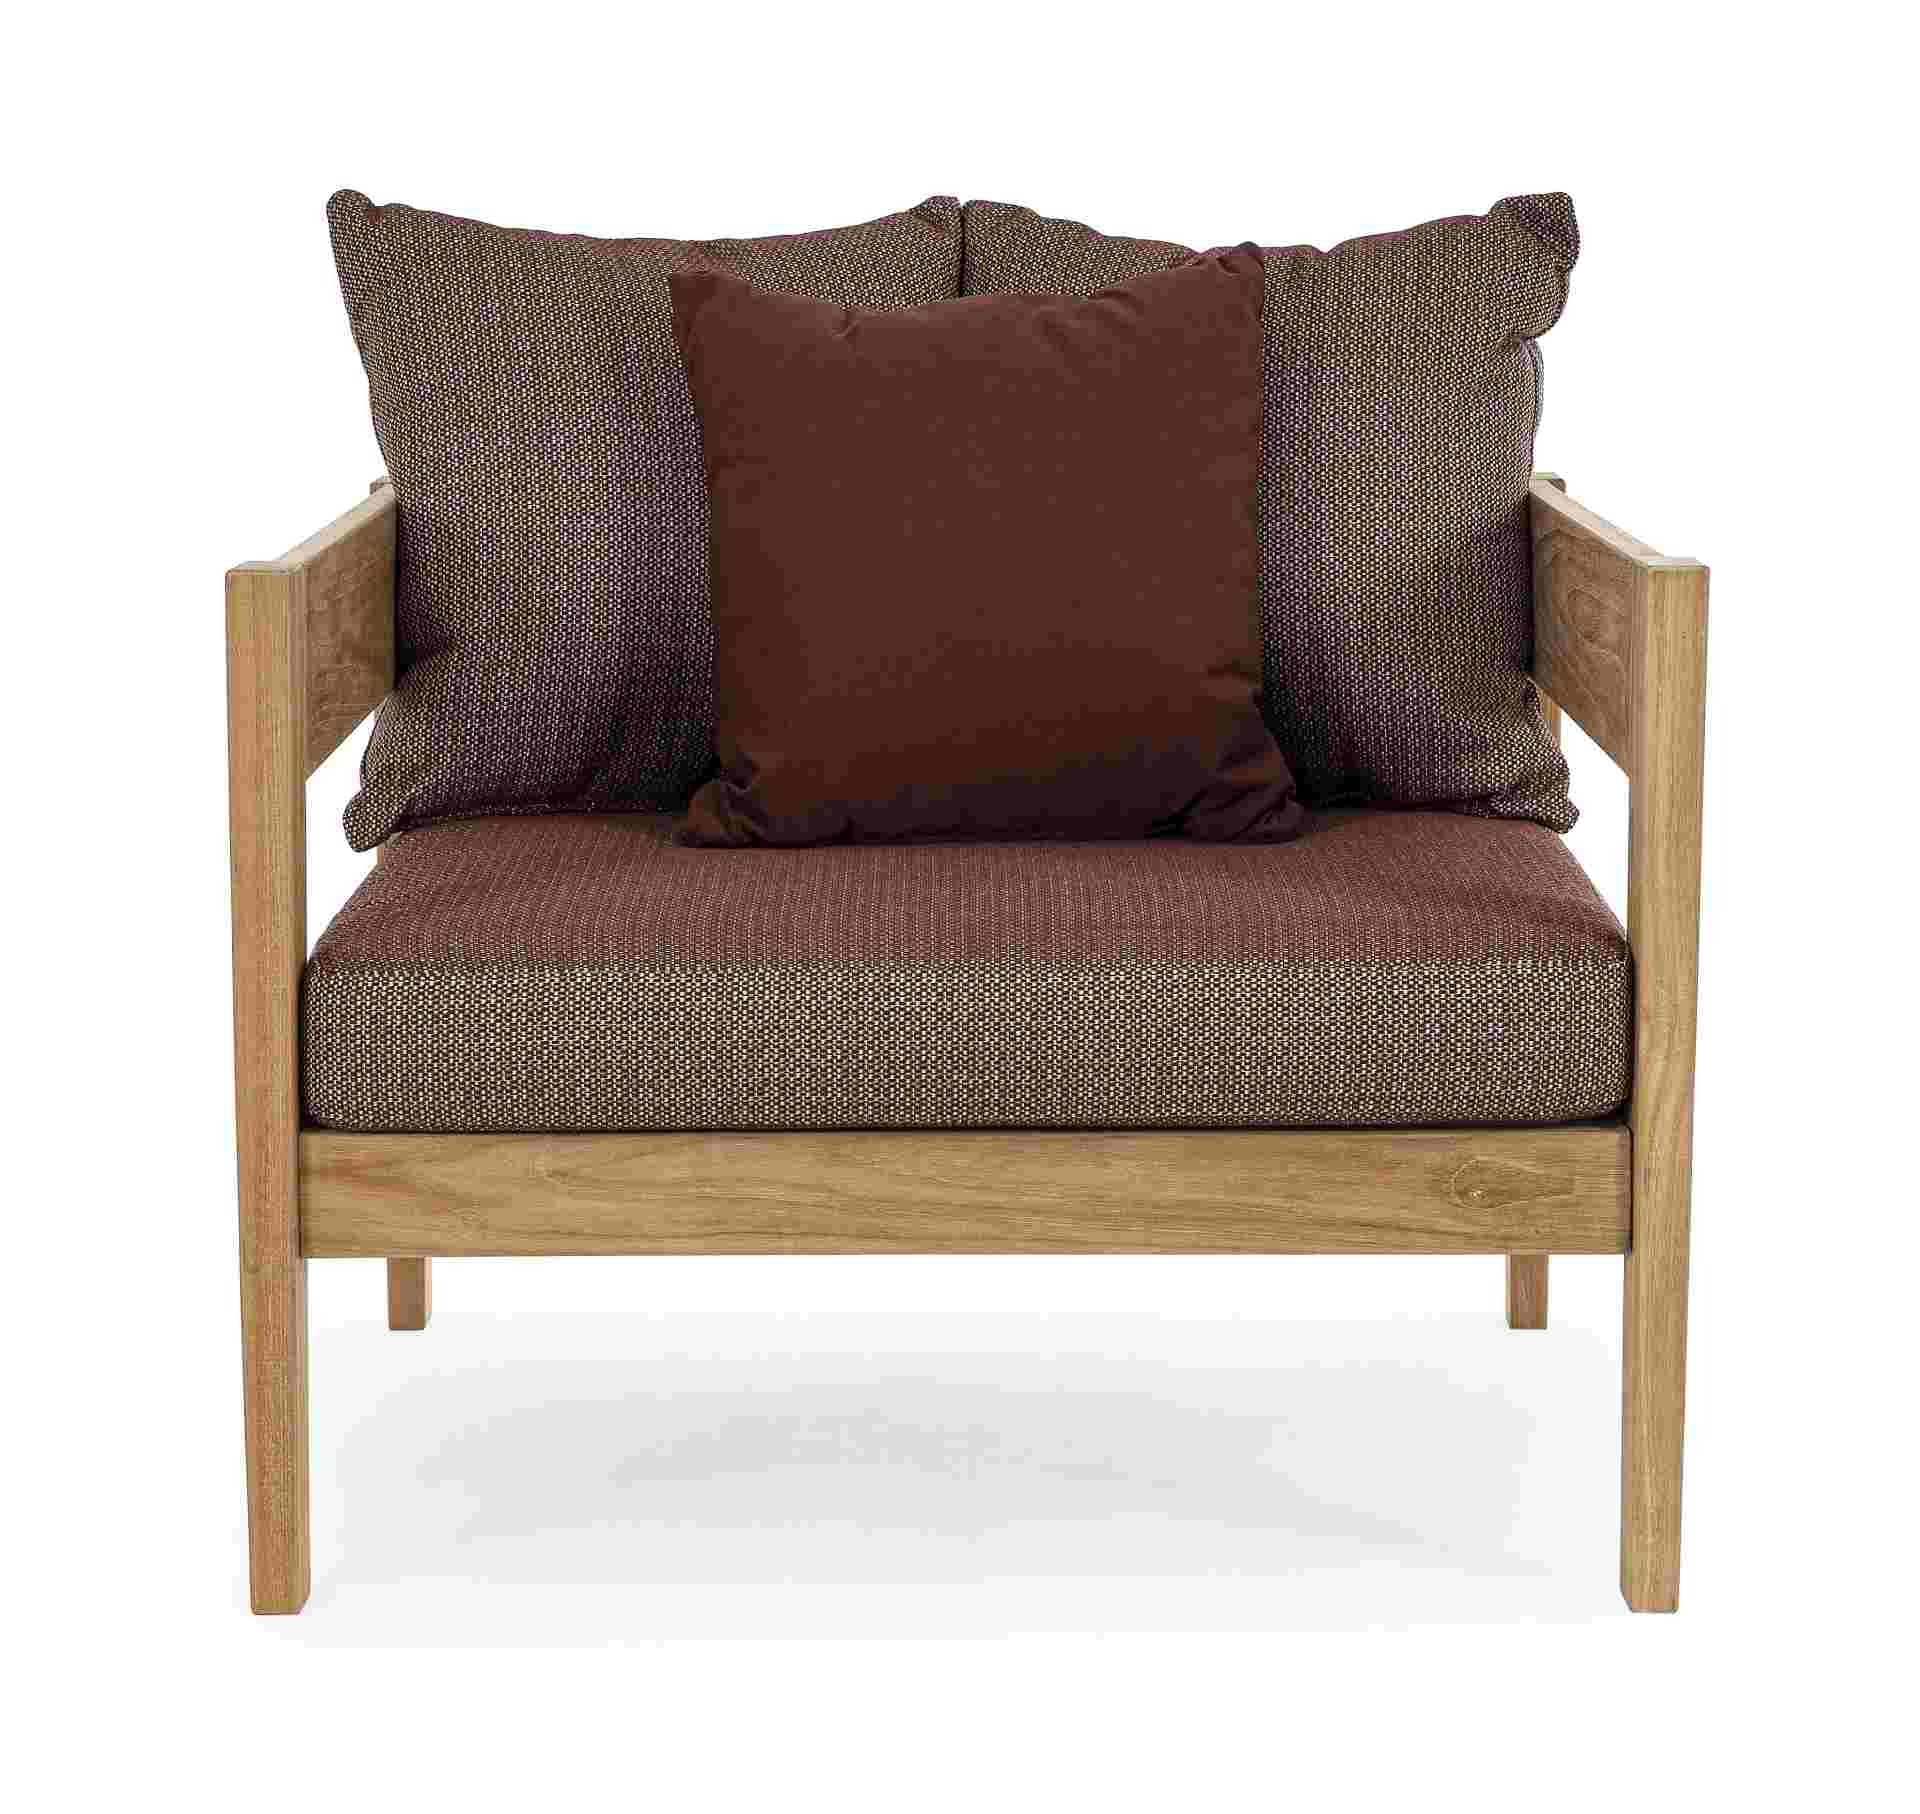 Der Gartensessel Kobo überzeugt mit seinem klassischen Design. Gefertigt wurde er aus Teakholz, welche einen natürlichen Farbton besitzt. Die Kissen und Auflagen haben eine rote Farbe. Der Sessel verfügt über eine Sitzhöhe von 41 cm und ist für den Outdoo